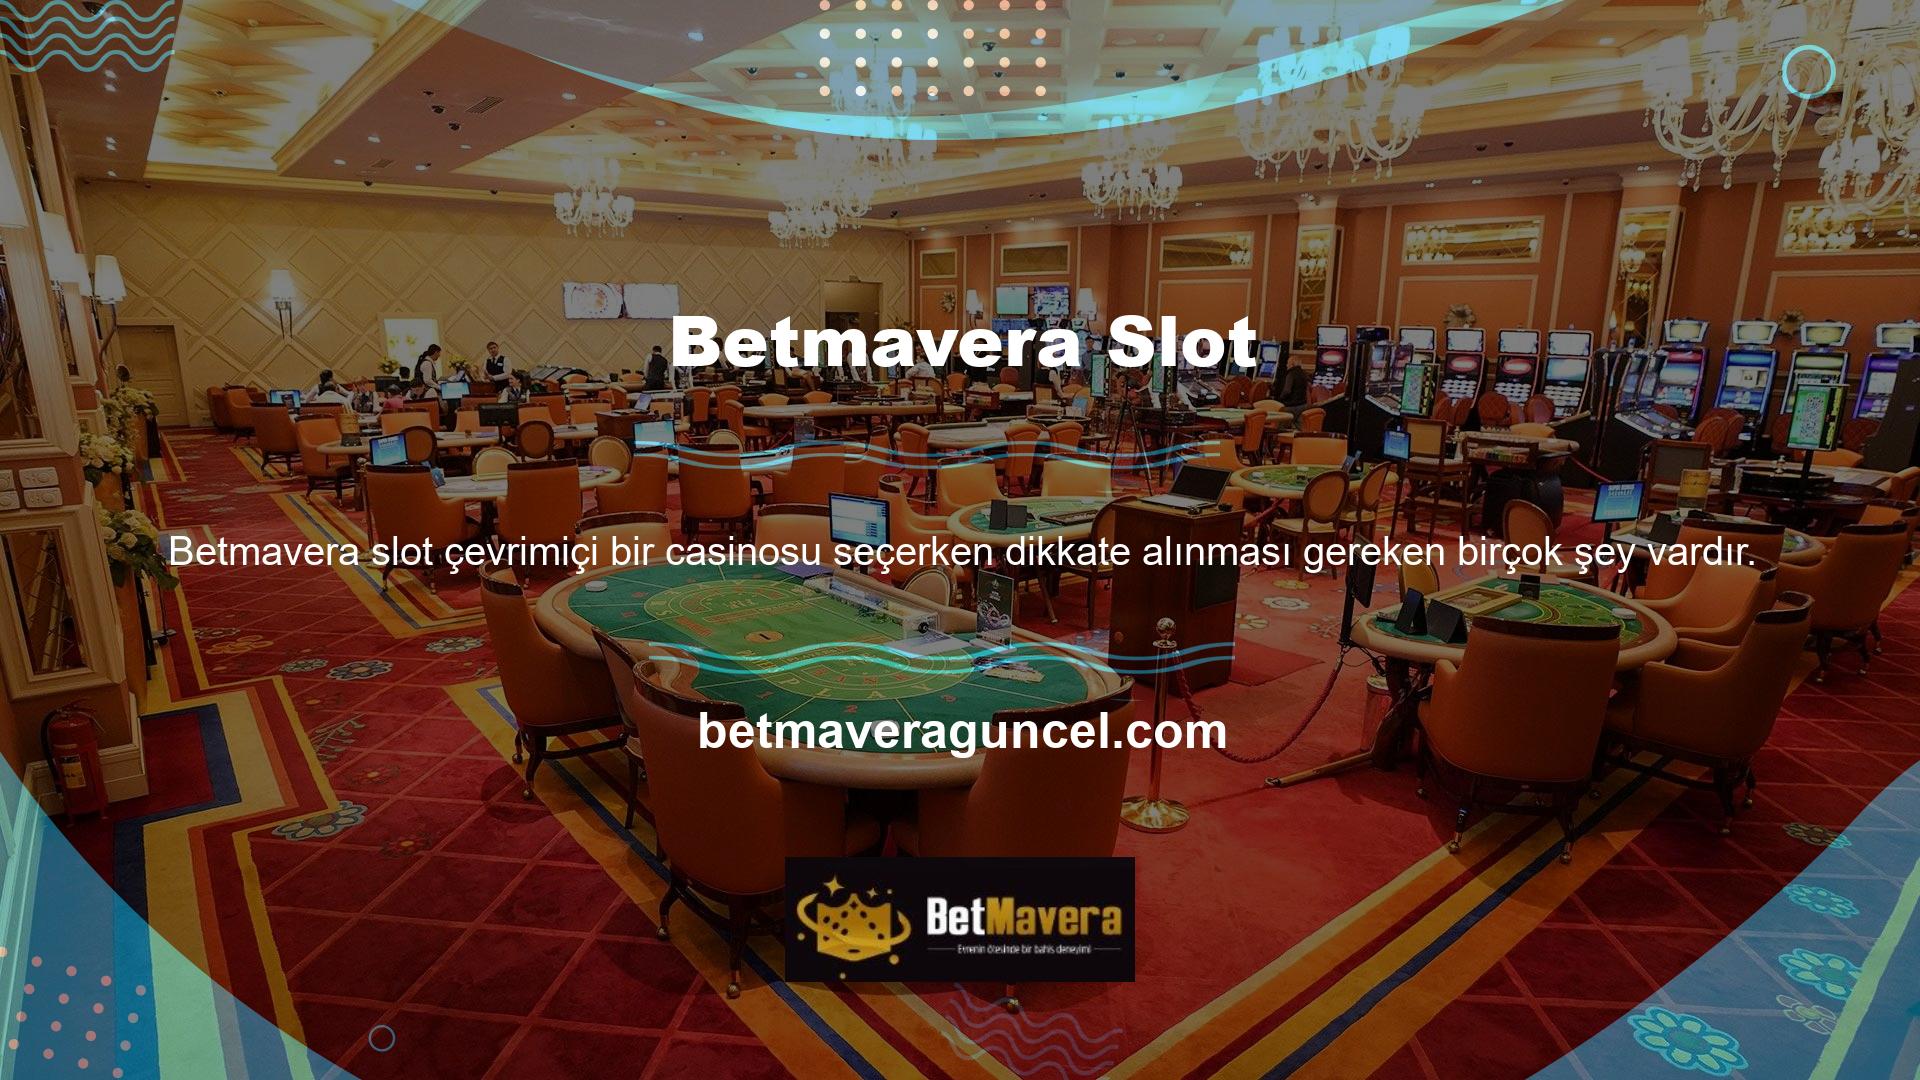 Betmavera casino ve canlı casino oyunları lisanslı olup katılımcılara harika bonuslar sunmakta, bu da sitenin altyapısının kendi seçeneklerine göre geliştirilmiş olmasından faydalanmalarını sağlamaktadır